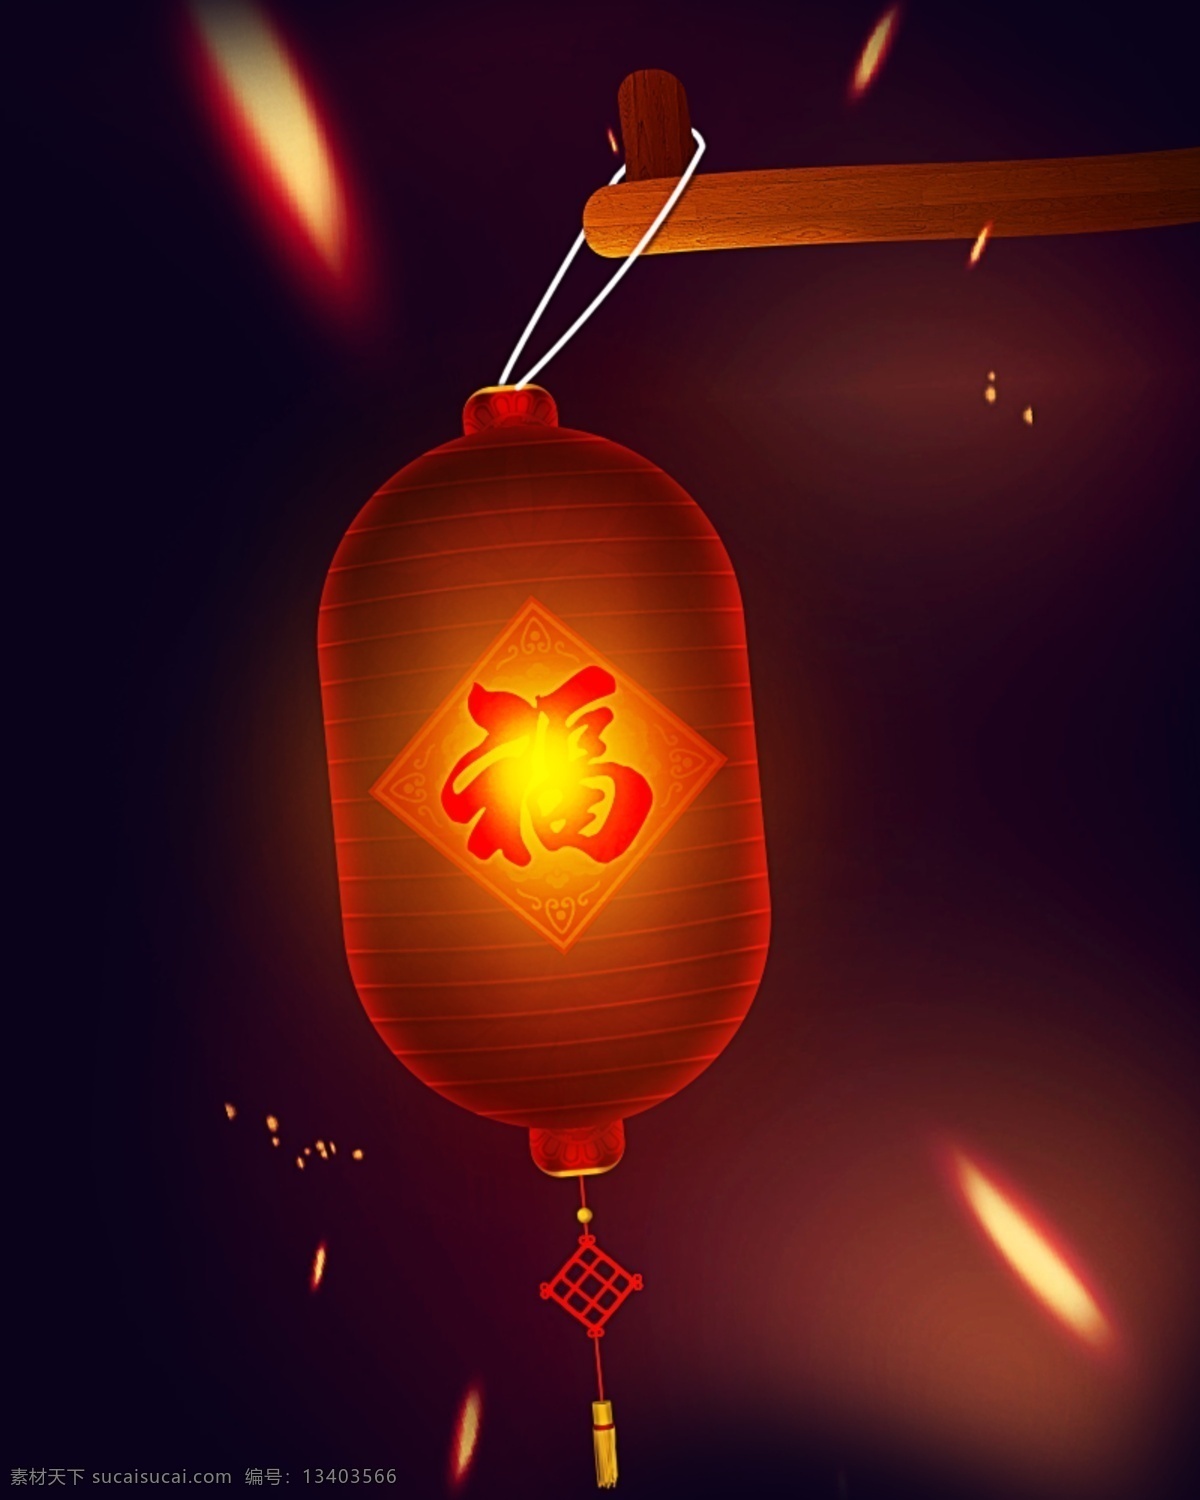 手绘灯笼 中国结 福 黄色 红色 灯笼 金色 中国风 中国元素 灯笼素材